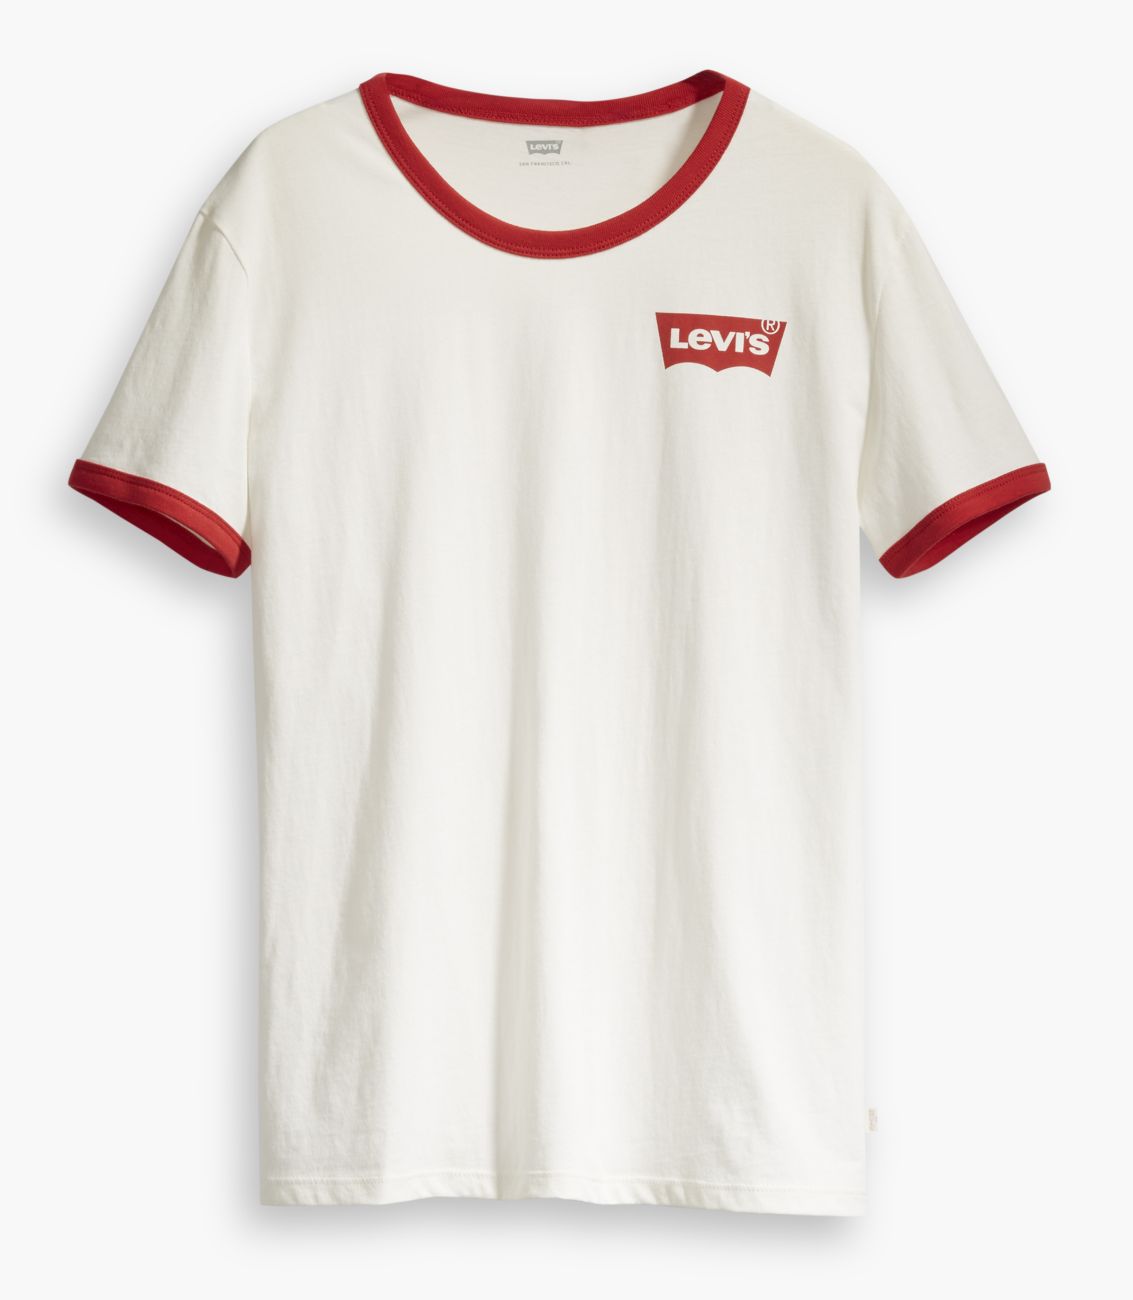 LEVIS Shirts f. Damen T-Shirt 35793-0000 weiss W18-LDT1